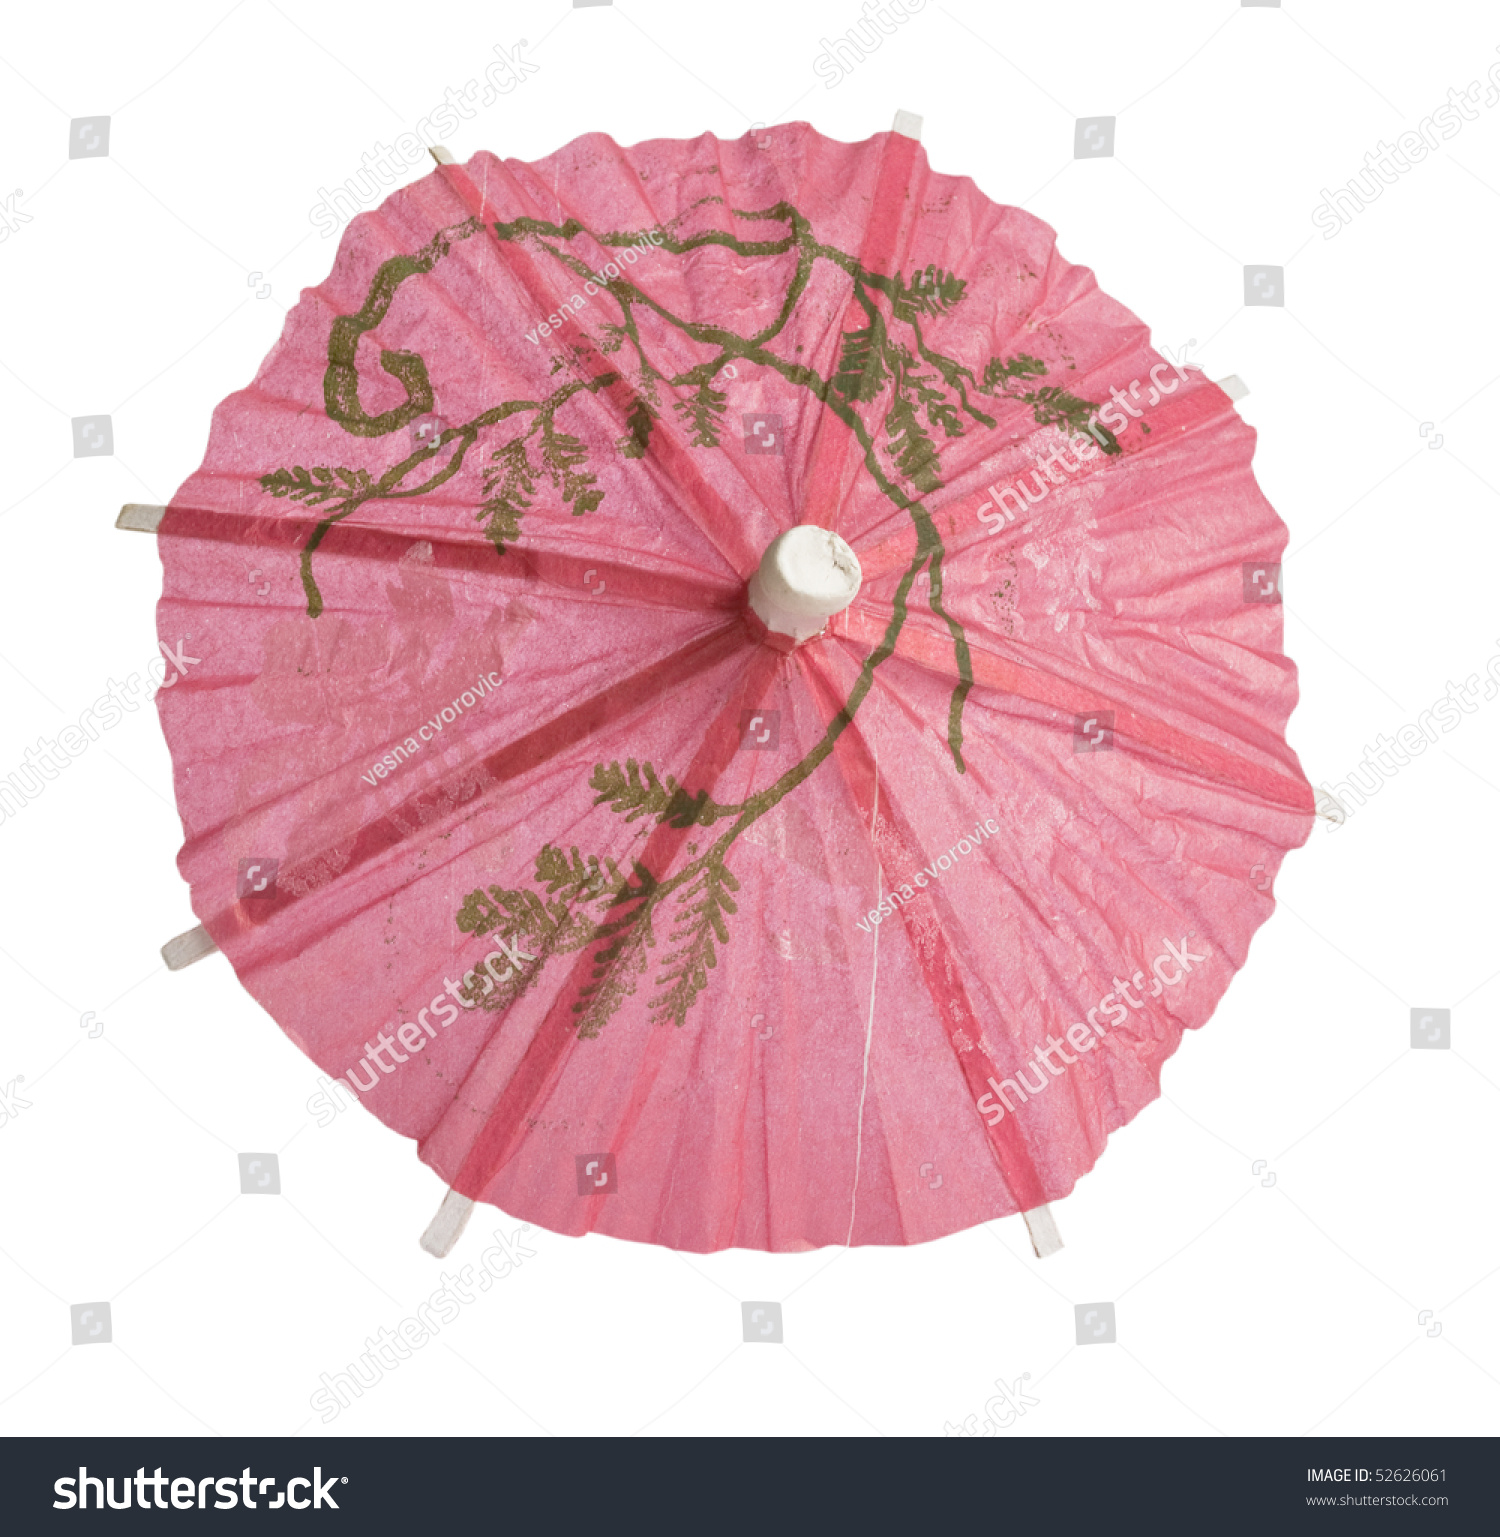 Cocktail umbrella photo